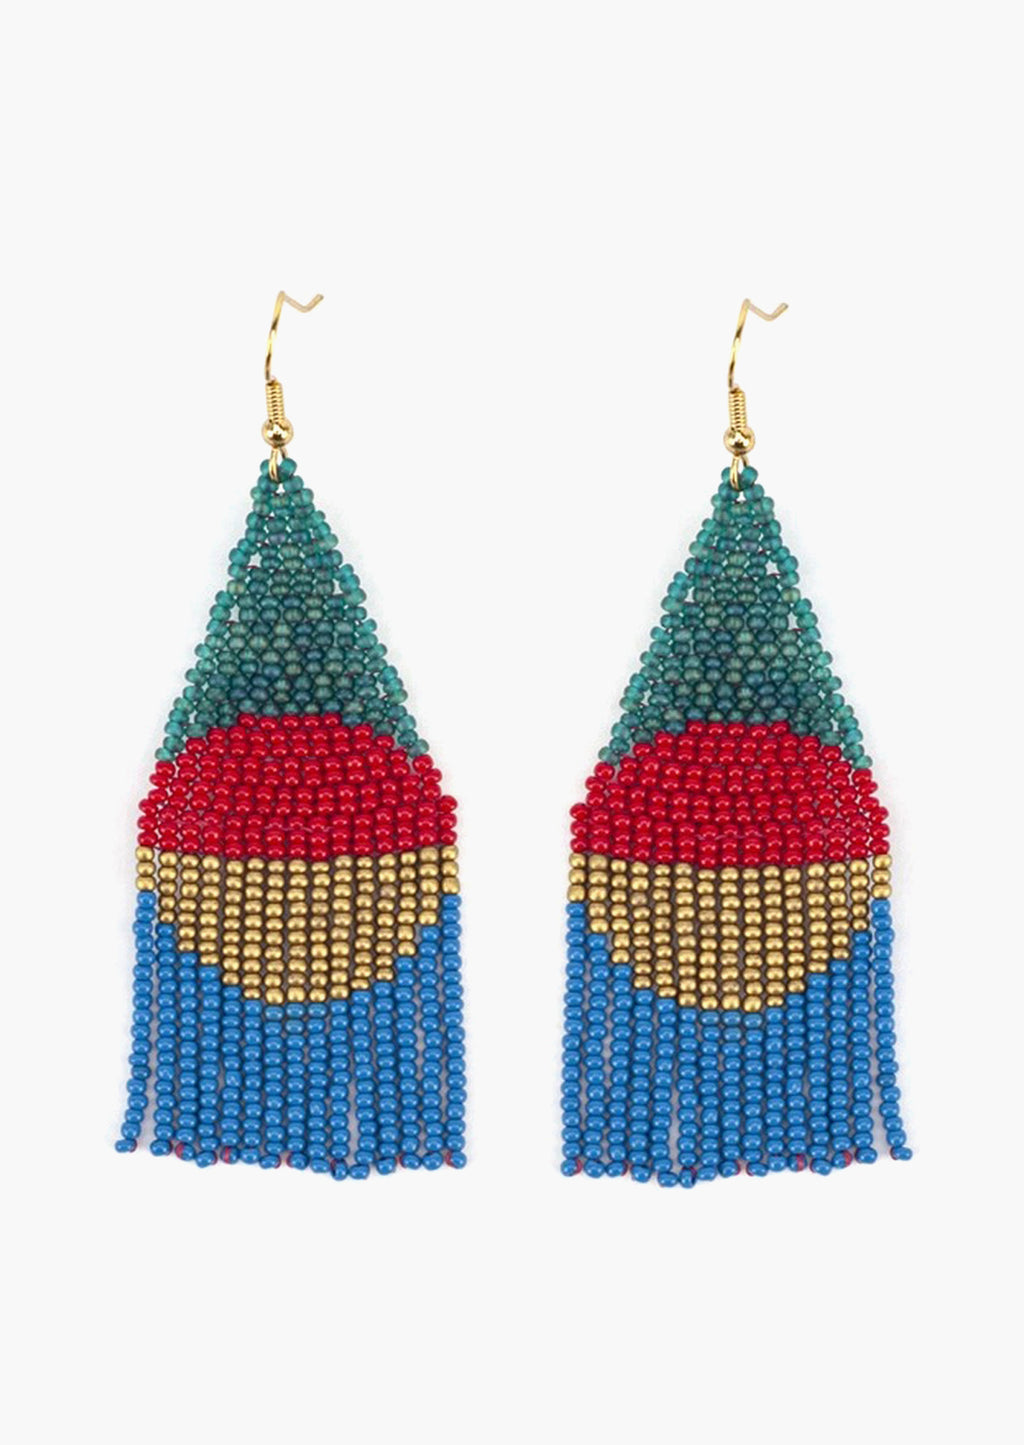 Blue Multi: A pair of geometric beaded earrings in blue colorway.